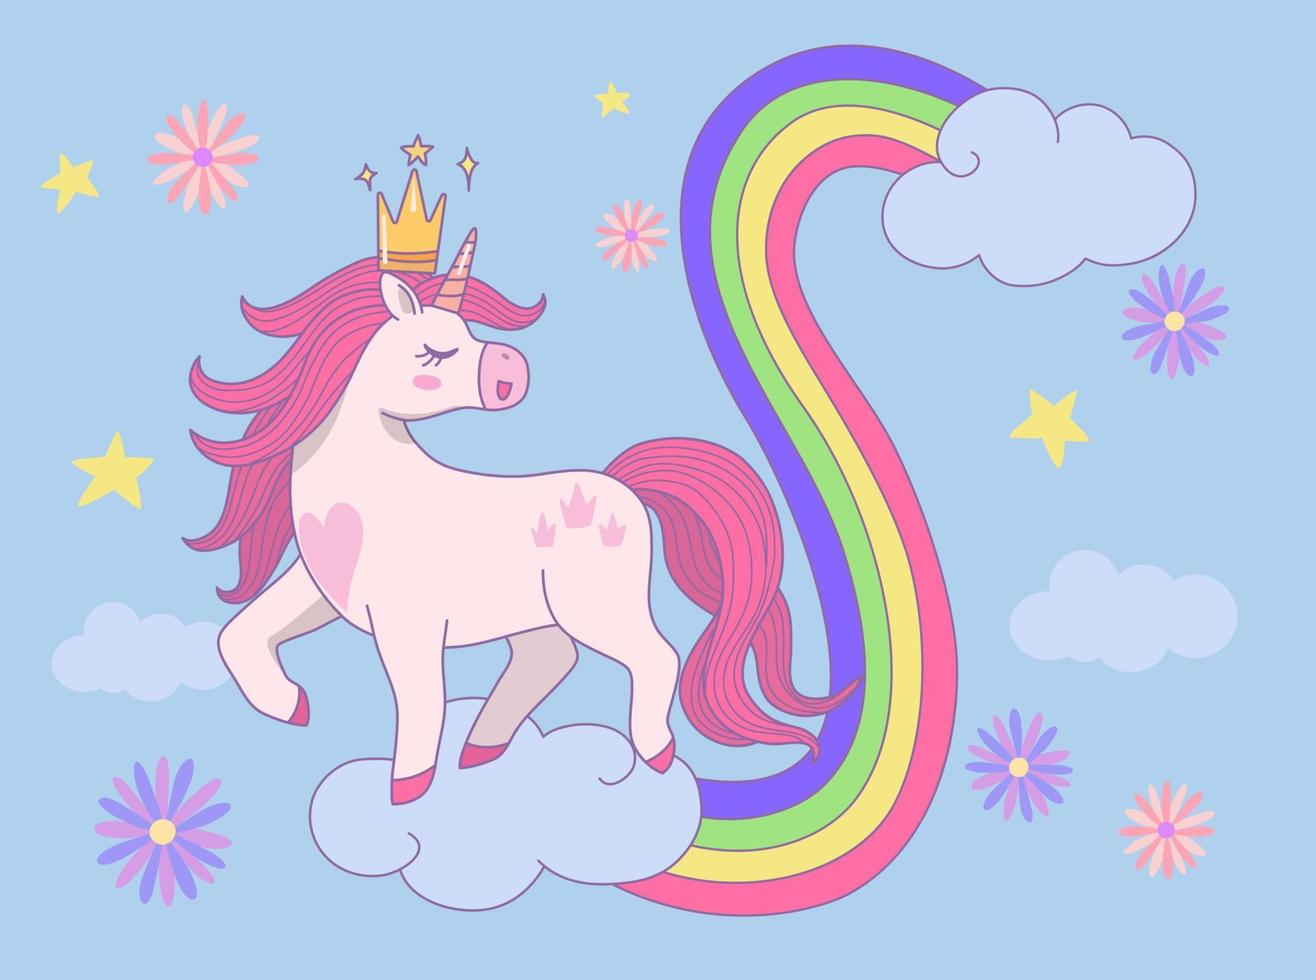 söt prinsessa enhörning bär en krona gående på moln med regnbåge vektor